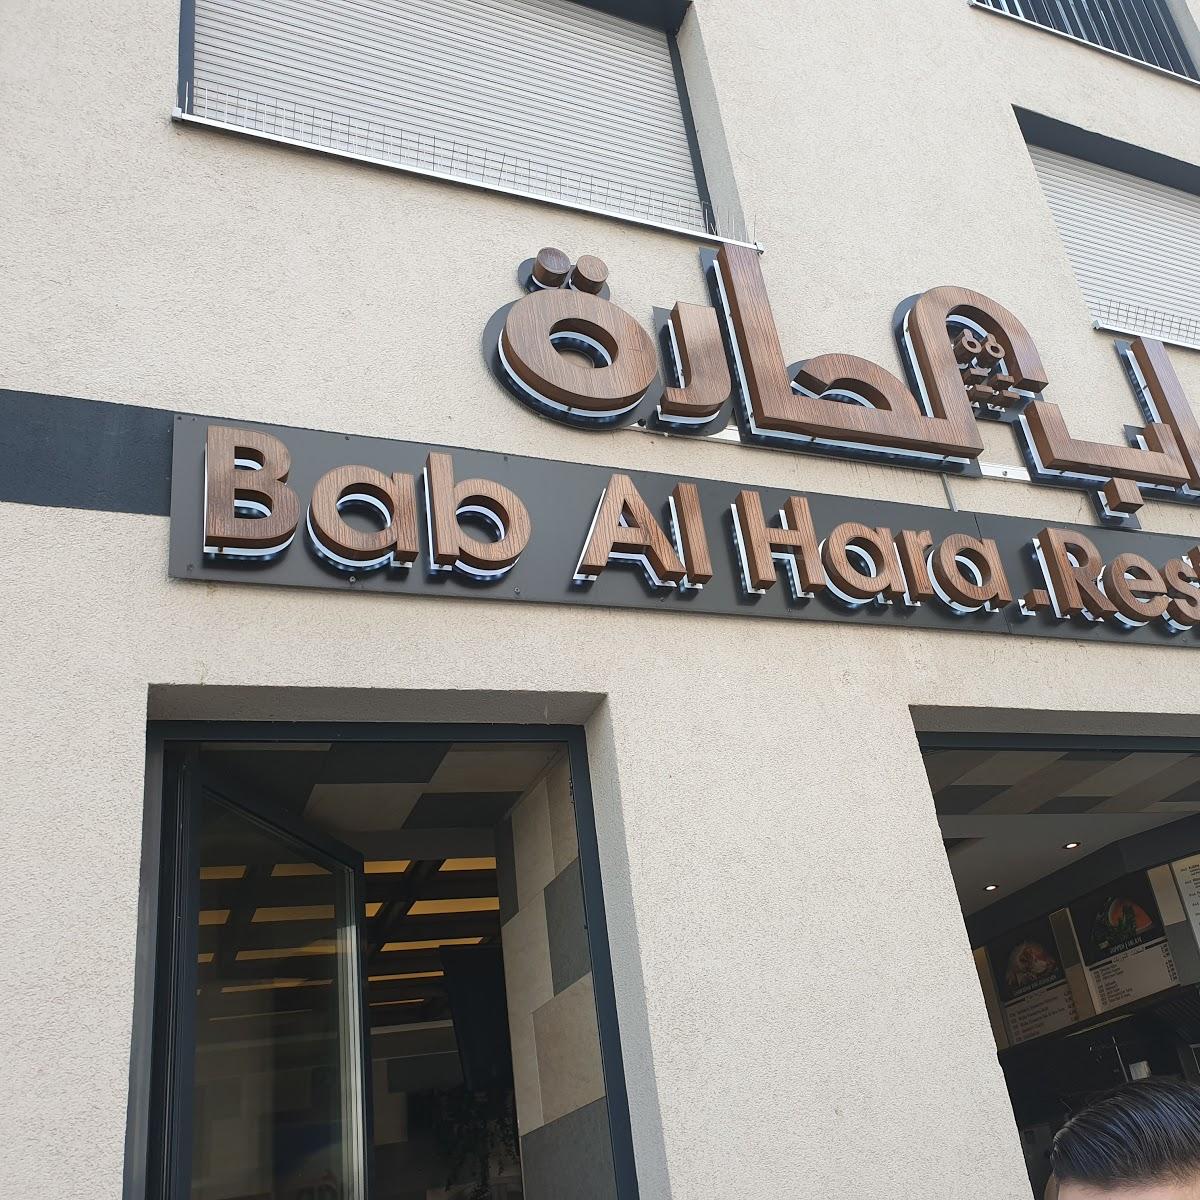 Restaurant "Bab Al Hara - Die Küche Syriens" in München